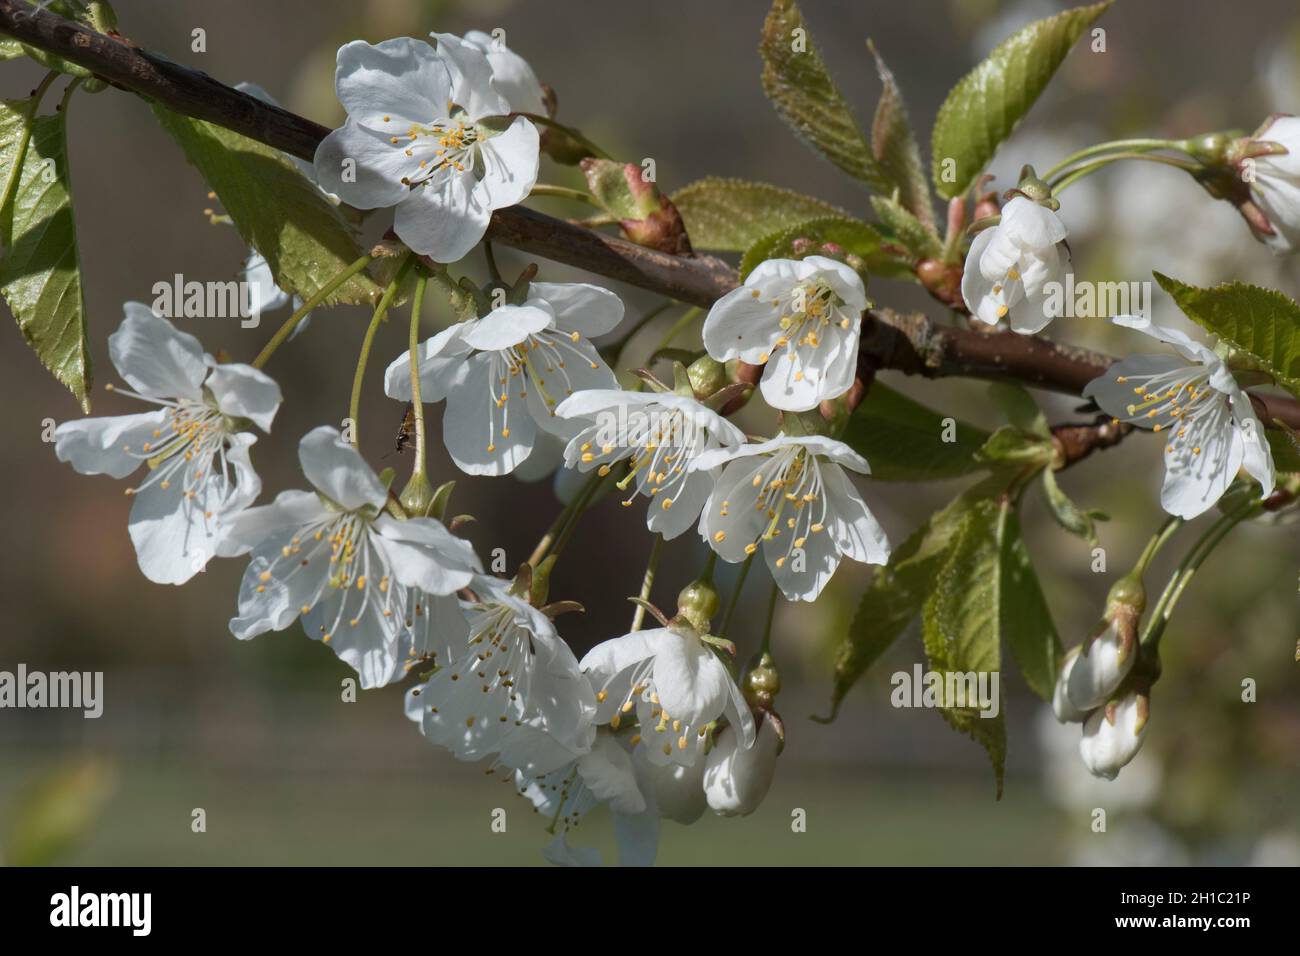 Ciliegia commestibile (Prunus spp.) fiori bianchi con spicco e antere tra giovani foglie verdi che si formano in primavera, Berkshire, aprile Foto Stock